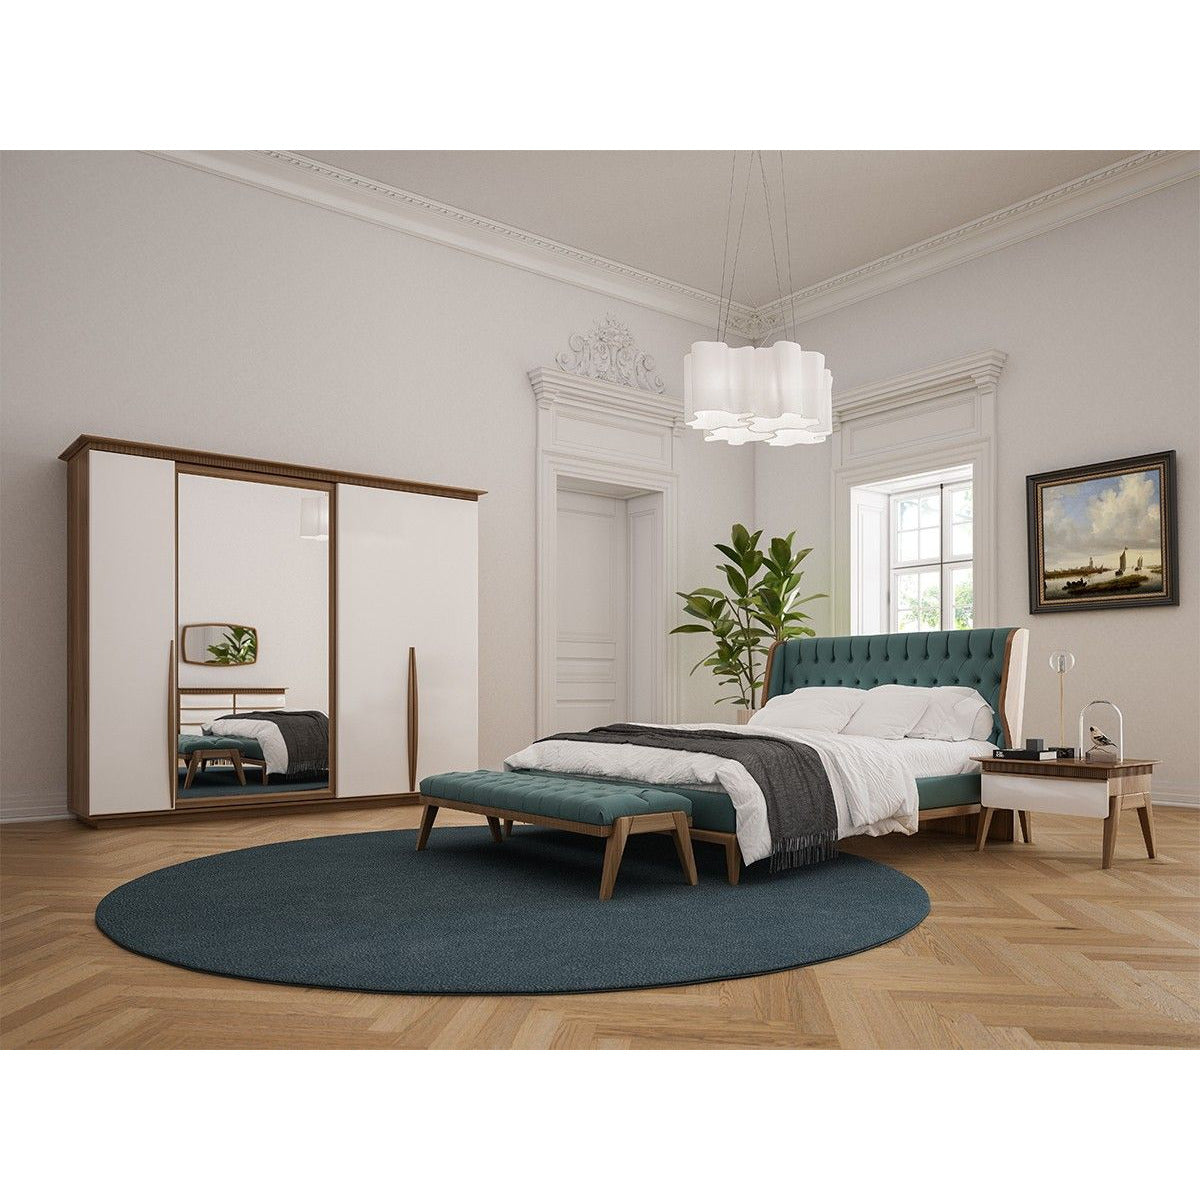 Lima Byrå - LINE Furniture Group